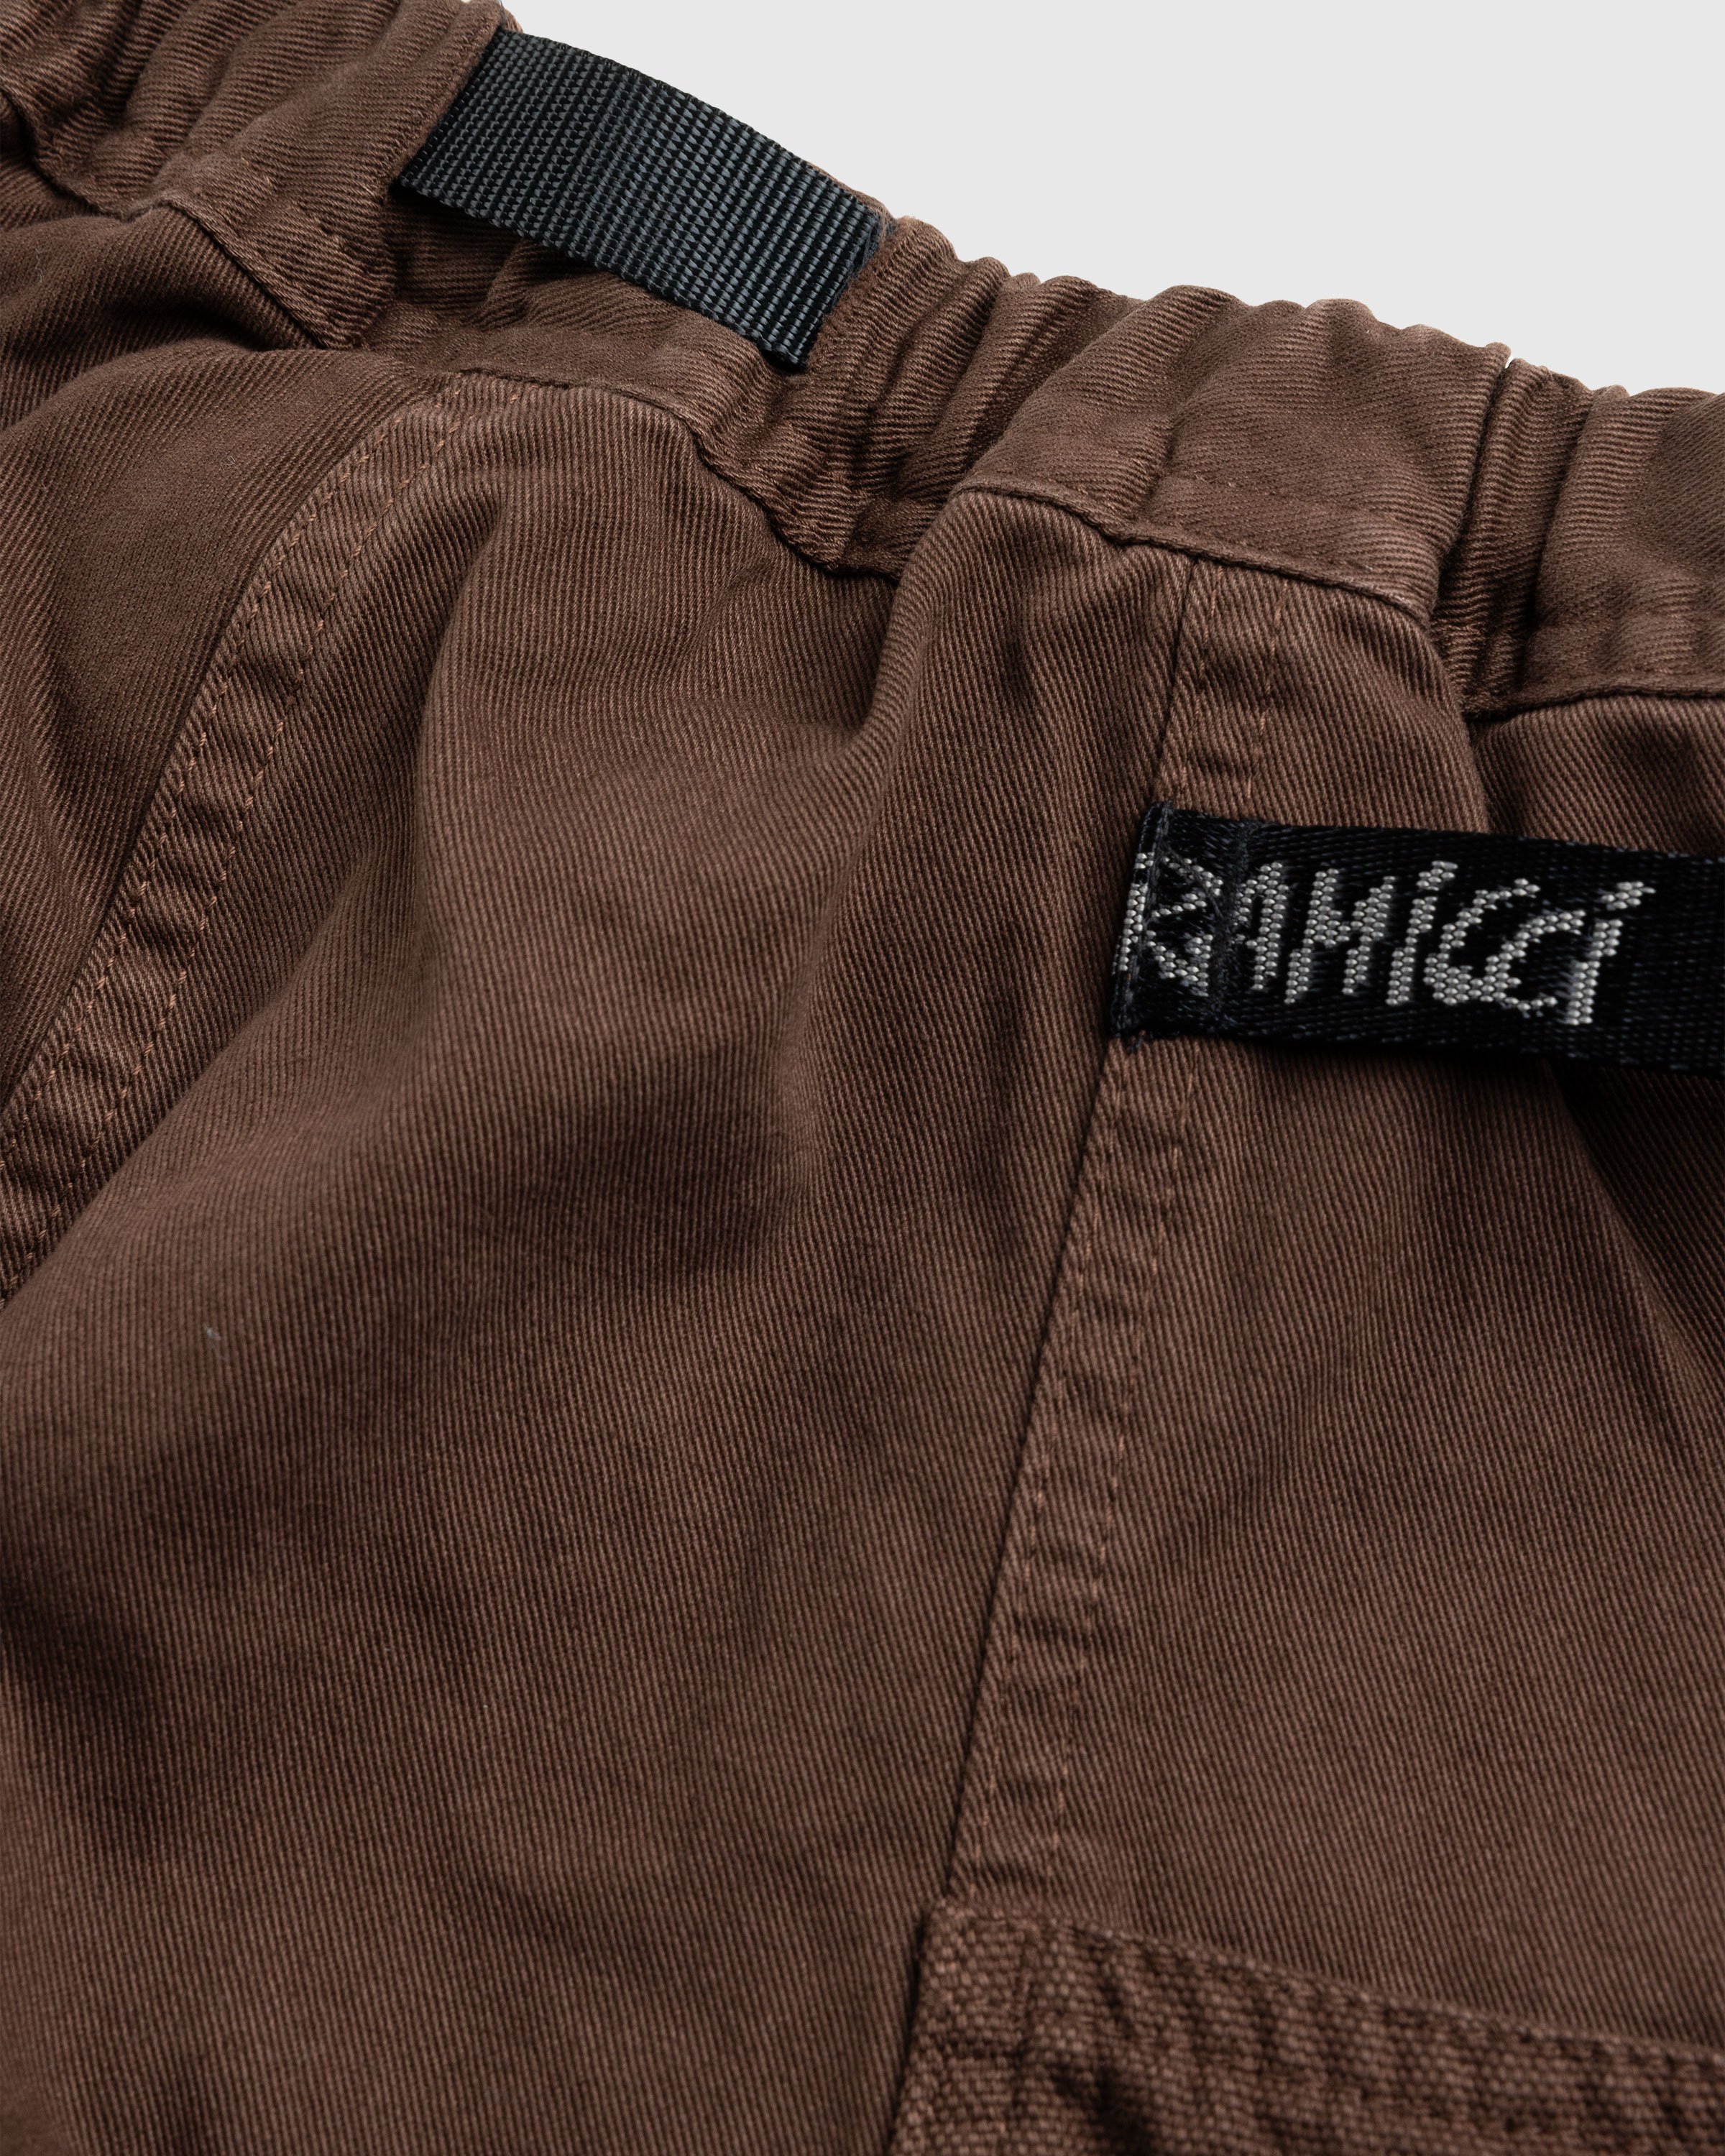 Gramicci - GADGET PANT - Clothing - Brown - Image 7